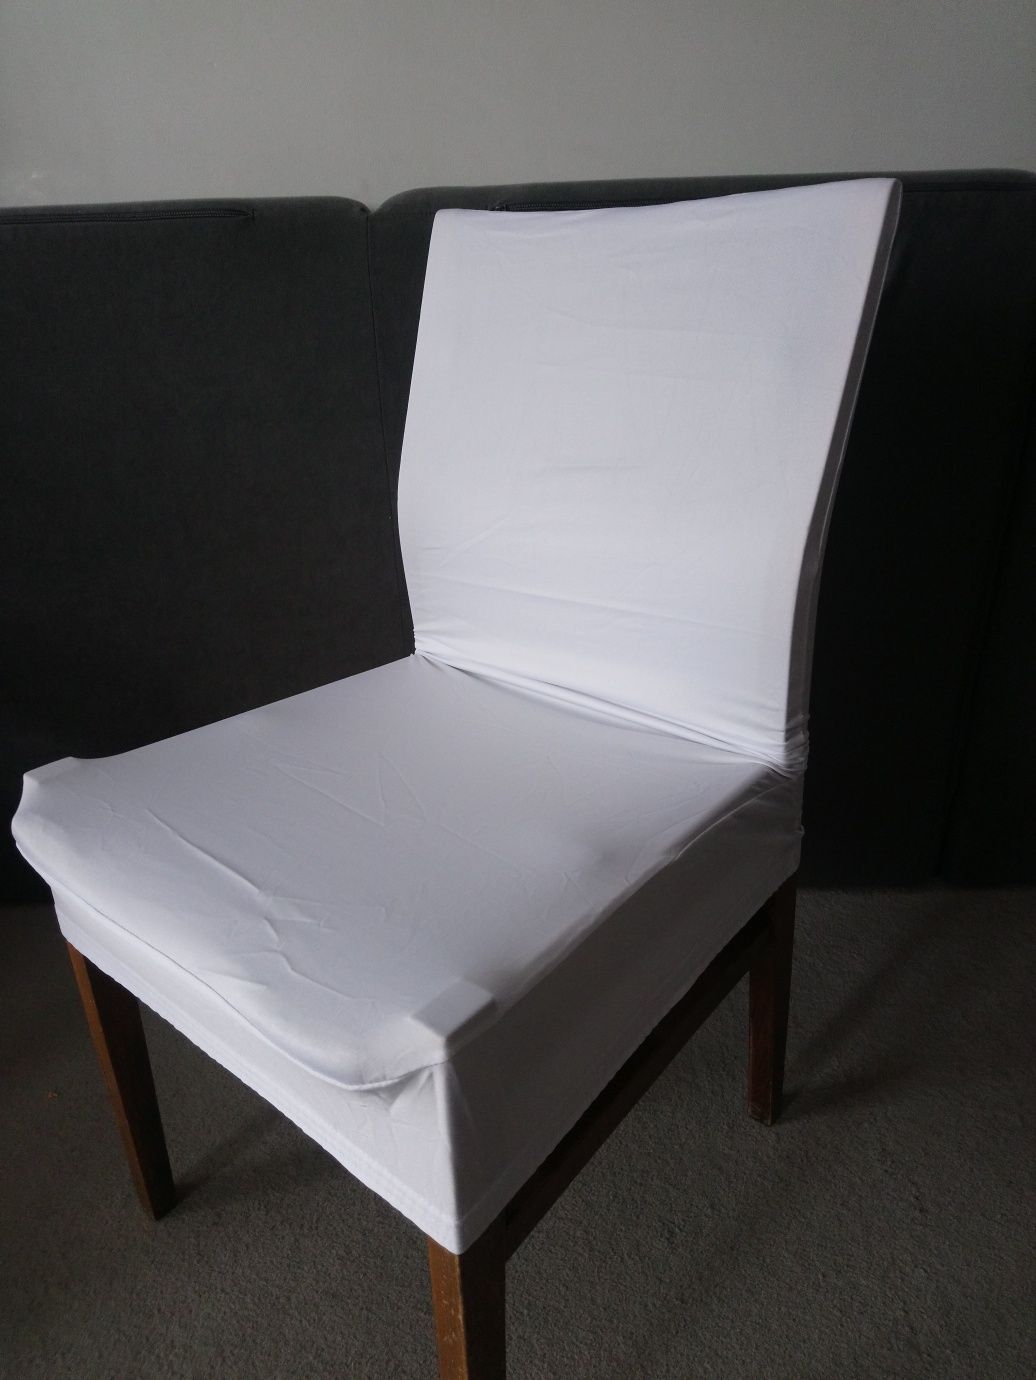 Pokrowce na krzesła 4szt biały połysk